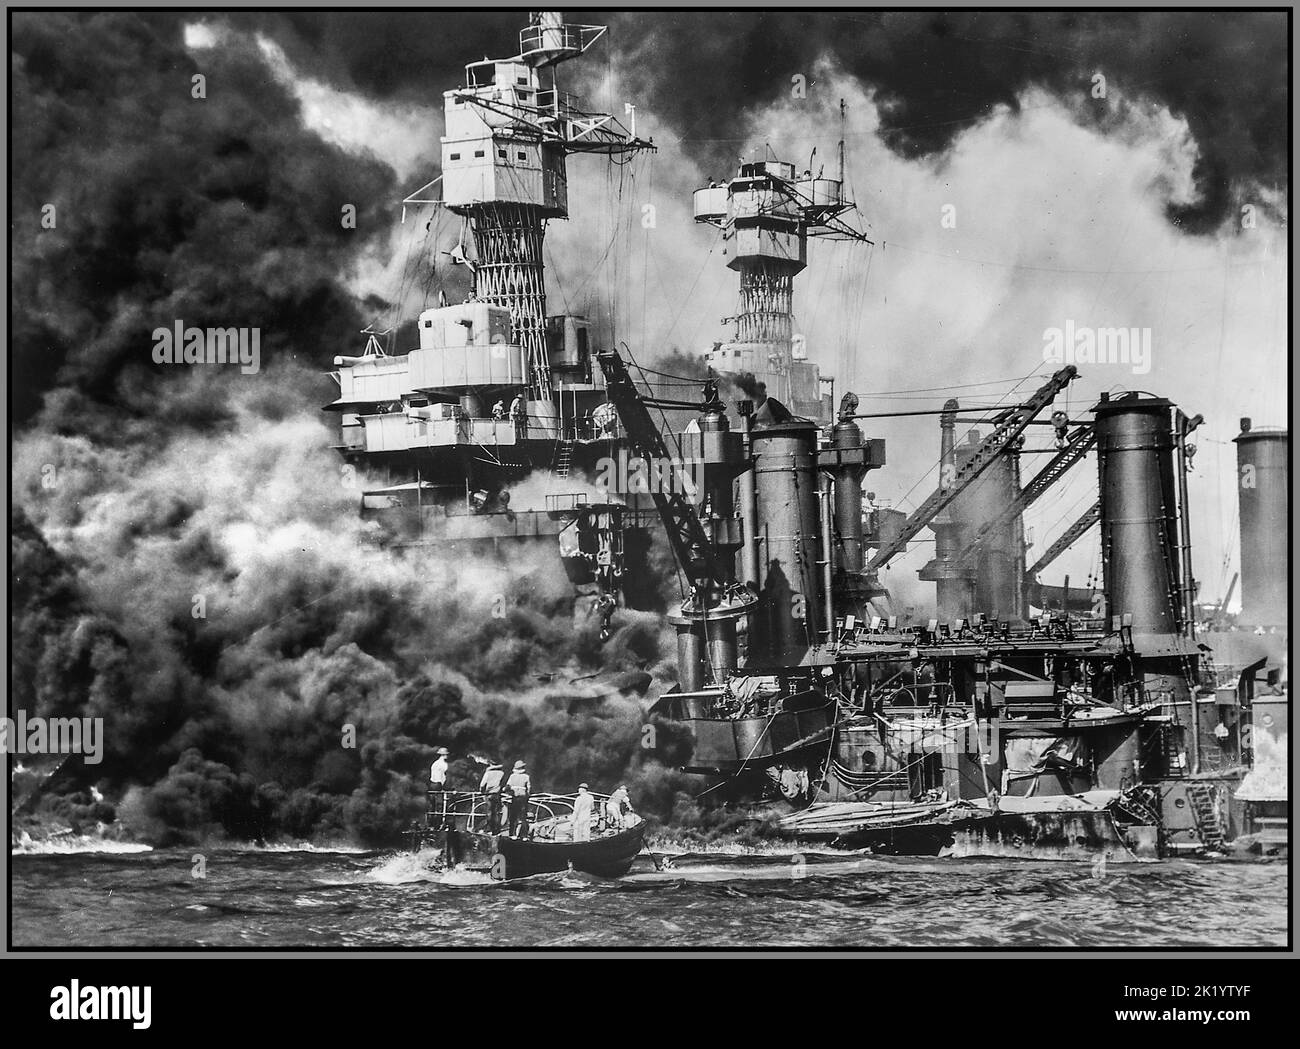 PEARL HARBOR JAPANISCHE GREIFEN WW2 kleines Boot an, das einen Seemann im Wasser von der brennenden USS West Virginia in Pearl Harbor rettet Datum 7. Dezember 1941 Stockfoto